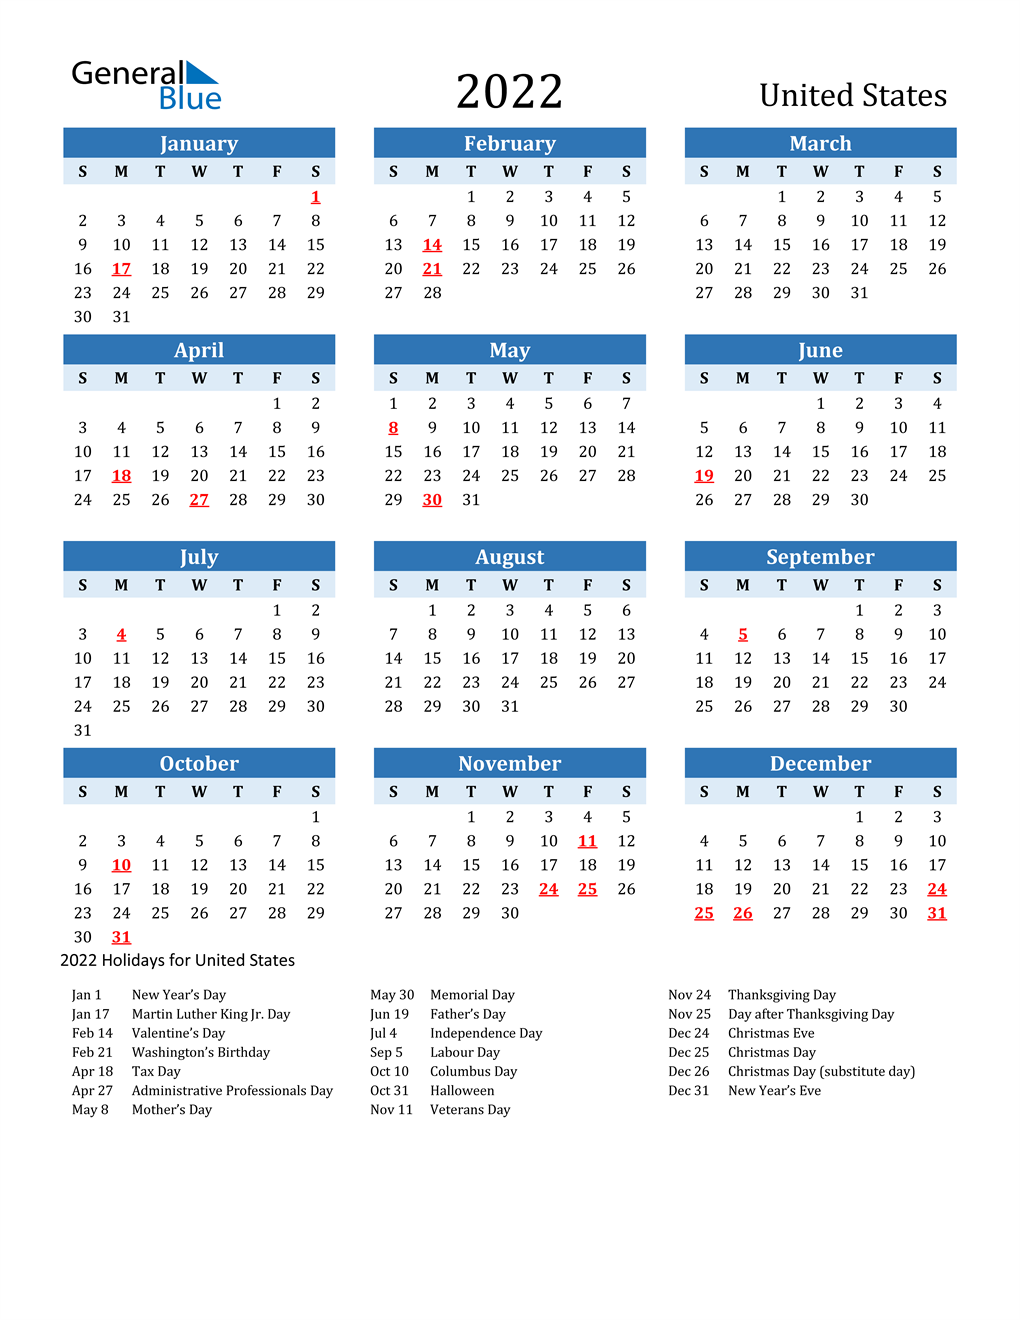 Ups Holiday Calendar 2022 February Calendar 2022